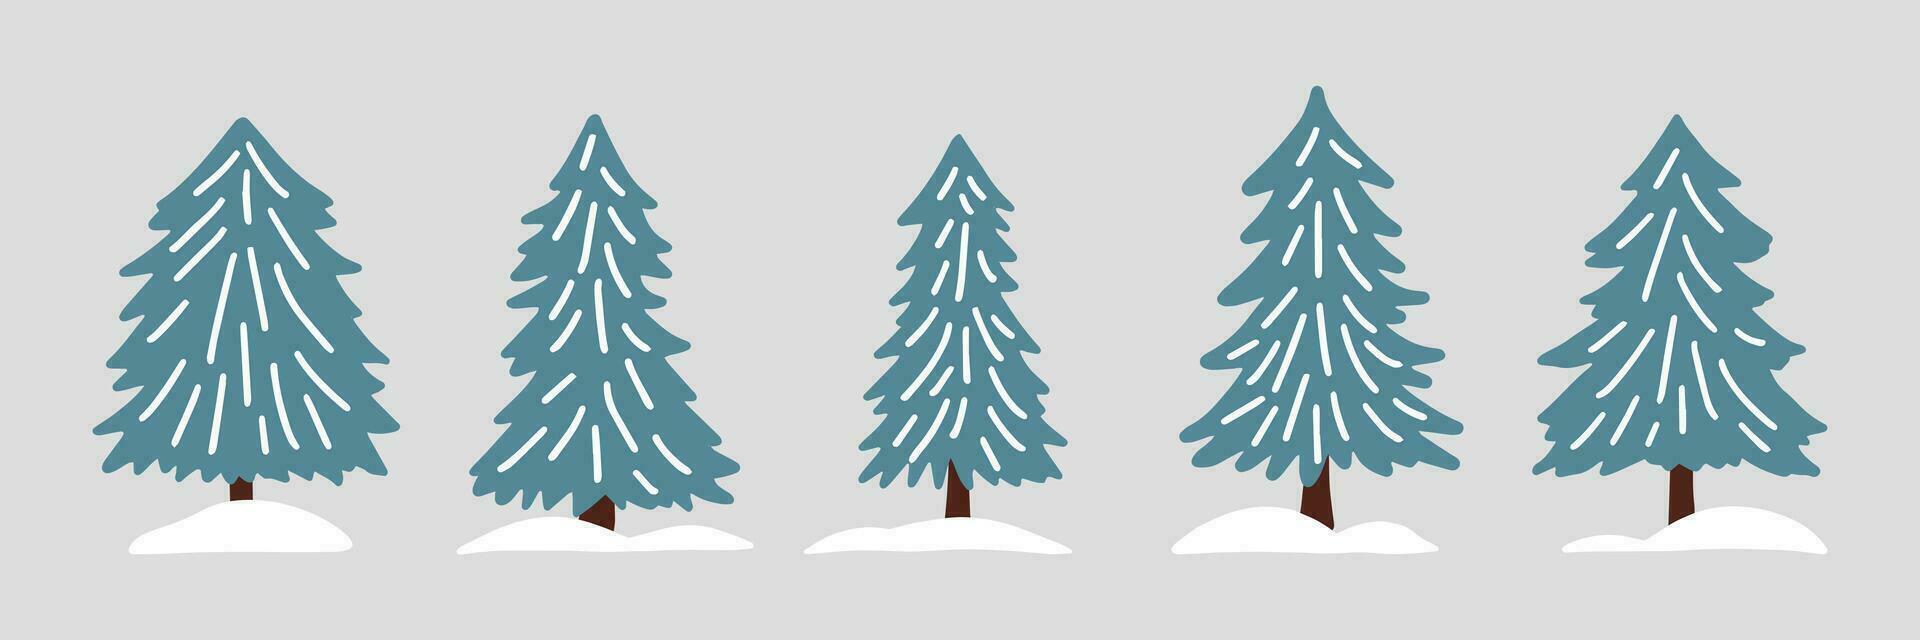 vinter- gran träd uppsättning i scandinavian enkel retro stil. årgång hand dragen tecknad serie ClipArt för jul dekoration, kort, affisch, flygblad, skriva ut och mönster. vektor illustration.